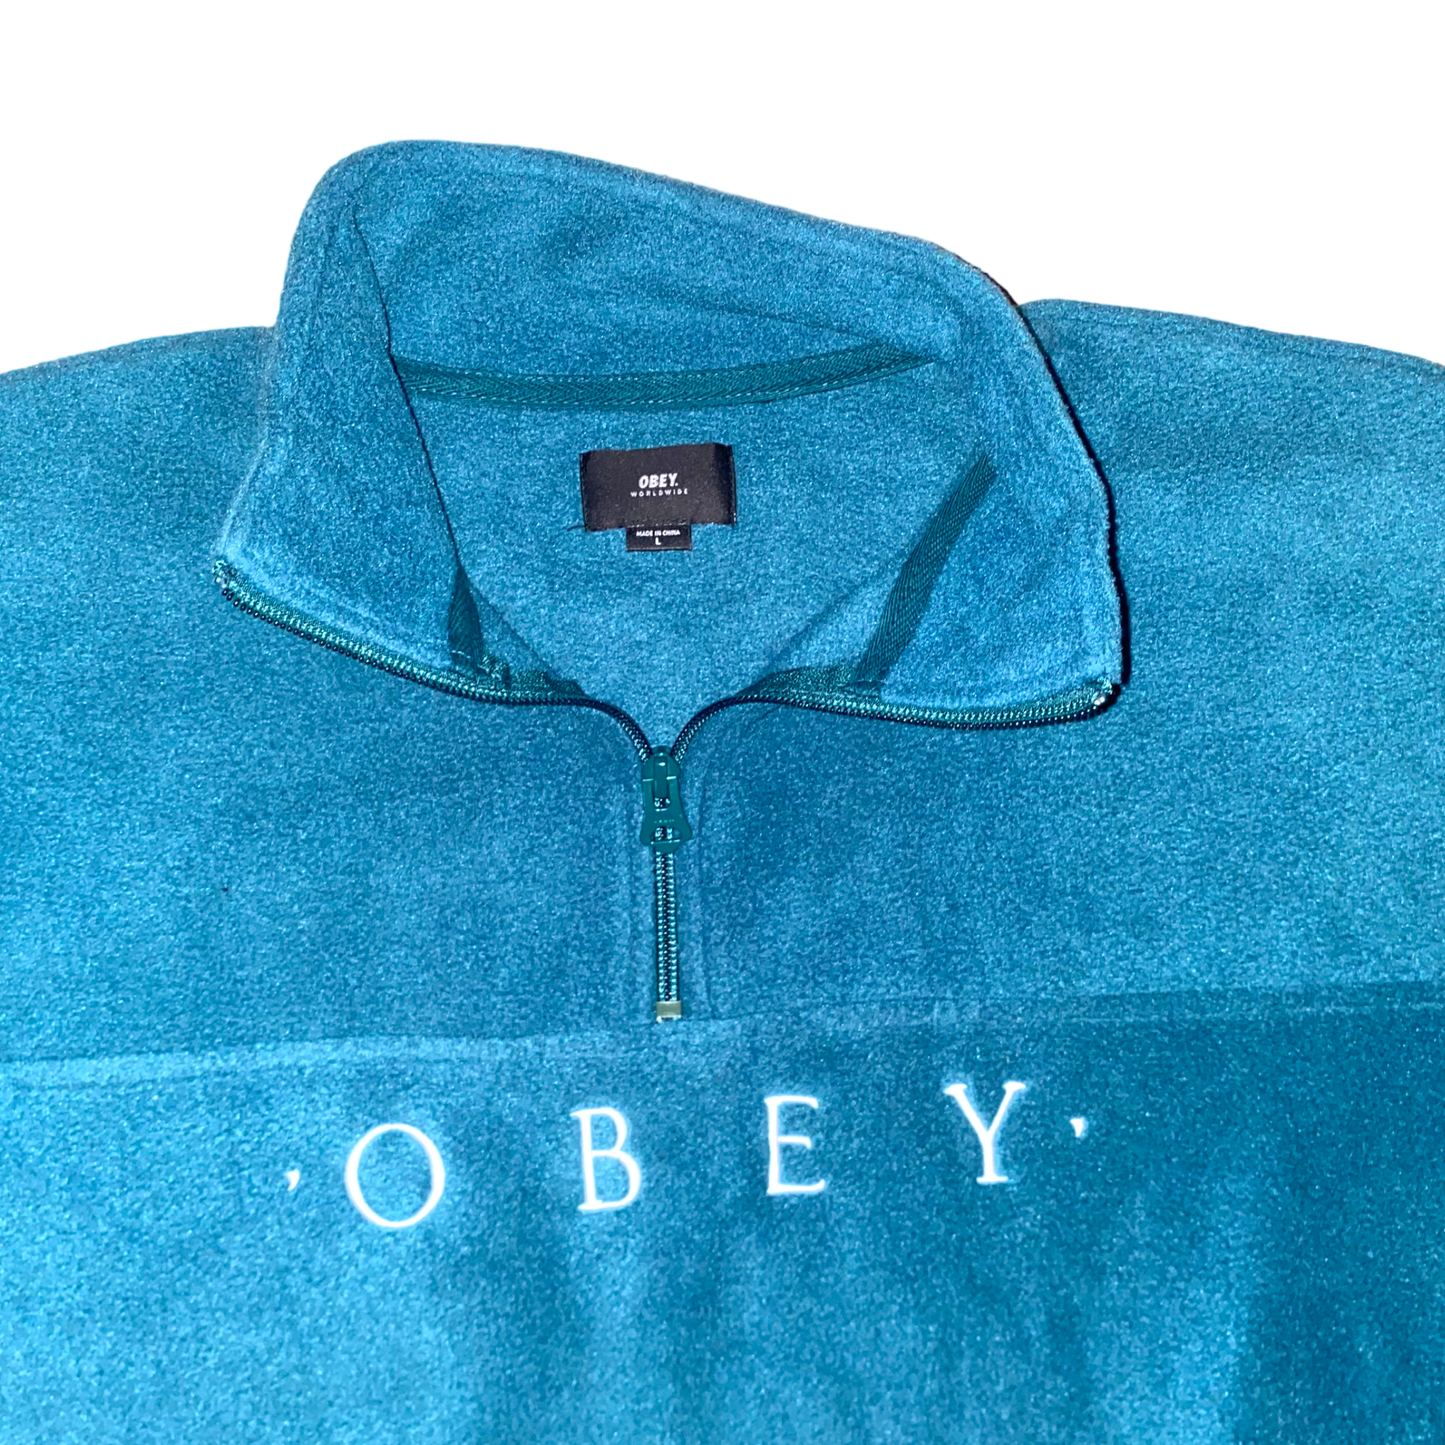 OBEY - Turquoise Fleece Half Zip Sweatshirt